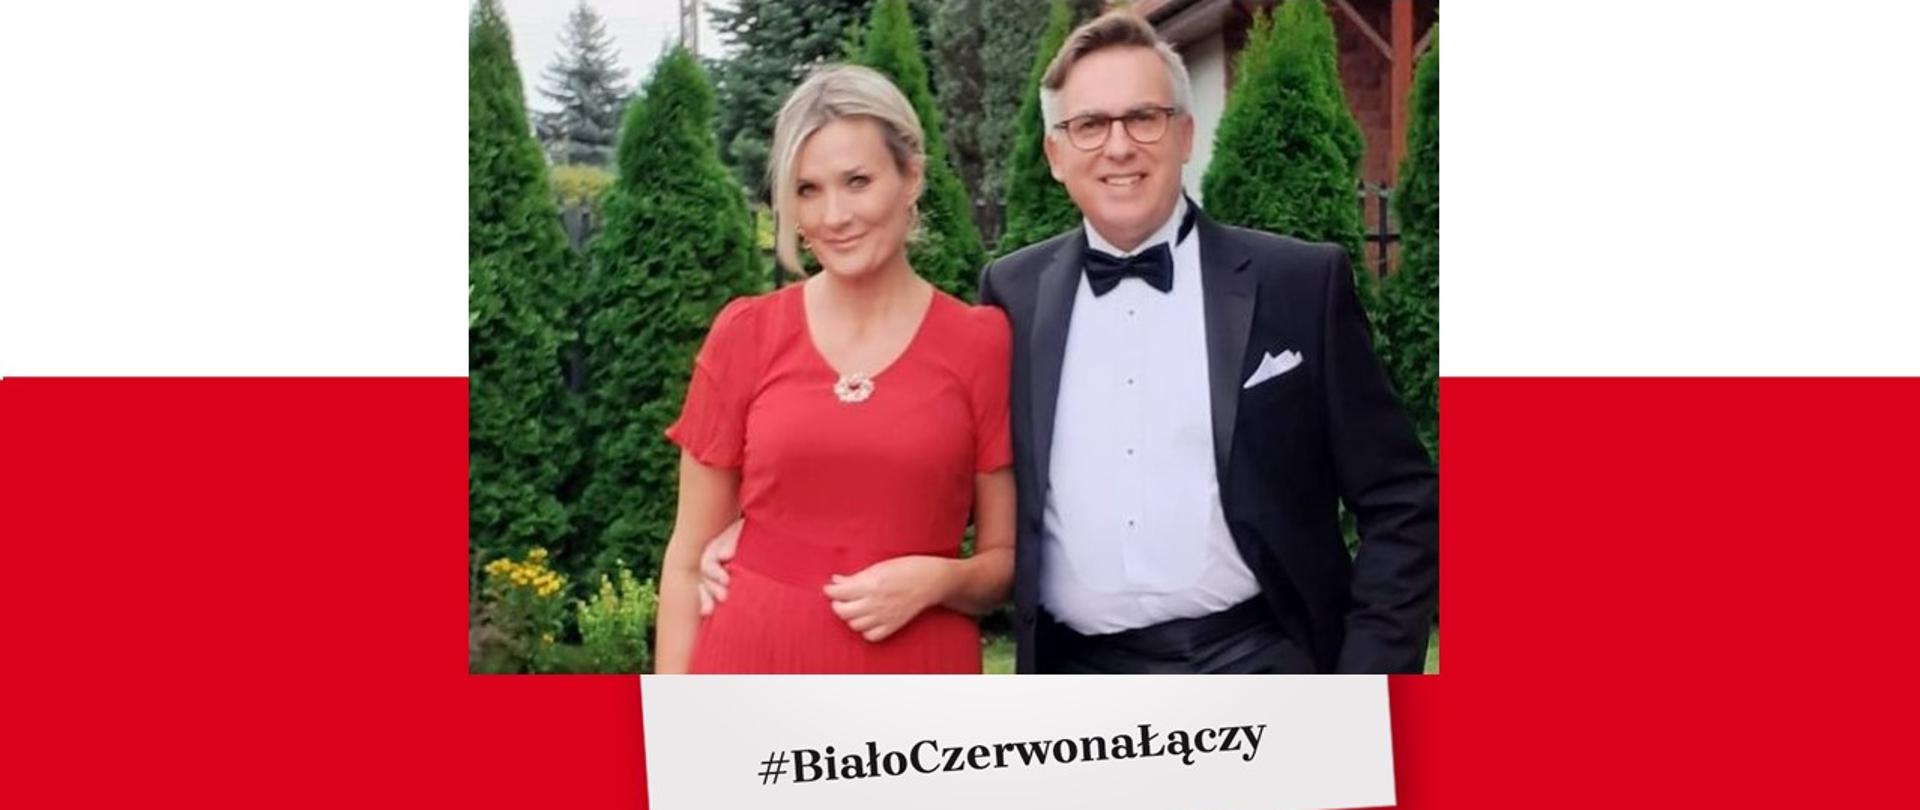 Joanna_Olendzka_i_Krzysztof_Olendzki_United_under_Polish_Flag_Biało-Czerwona_łączy